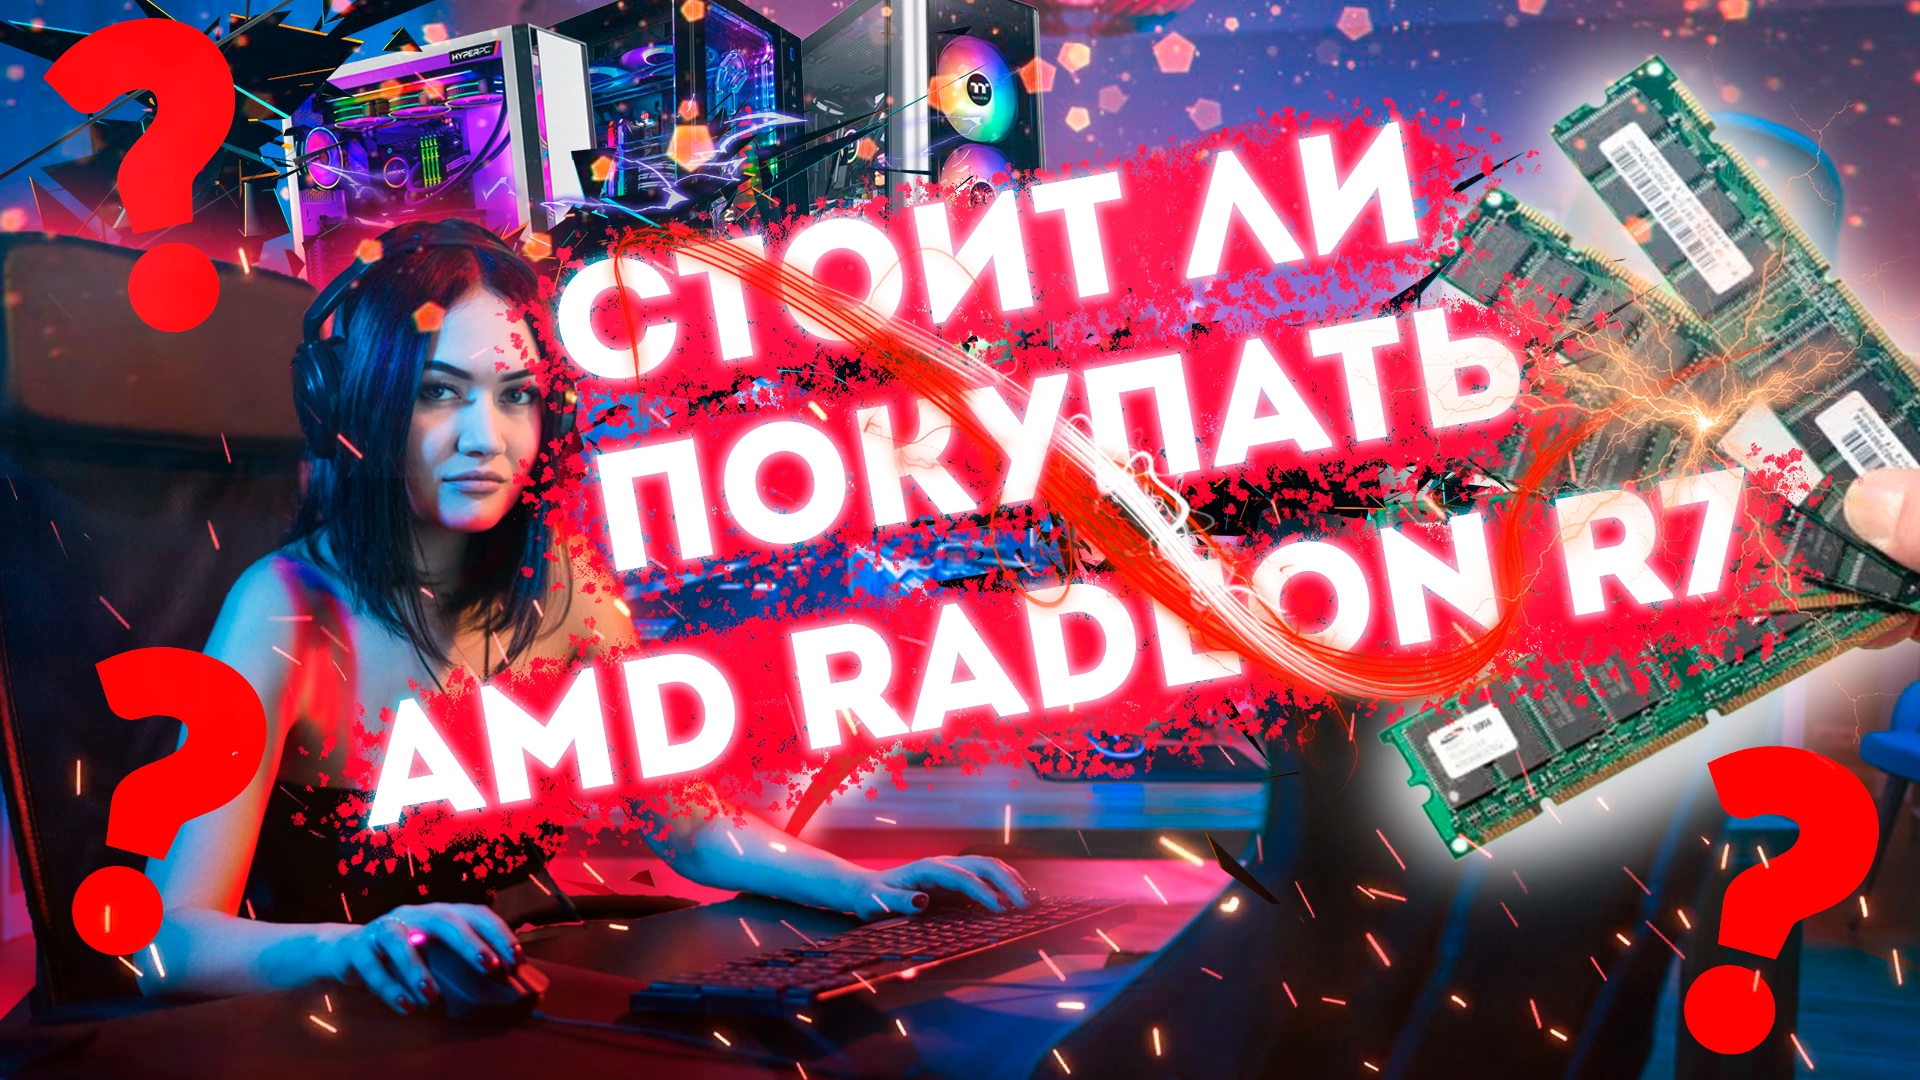 ❕СТОИТ ЛИ ПОКУПАТЬ ОЗУ ОТ AMD RADEON❕ - ОБЗОР AMD Radeon R7